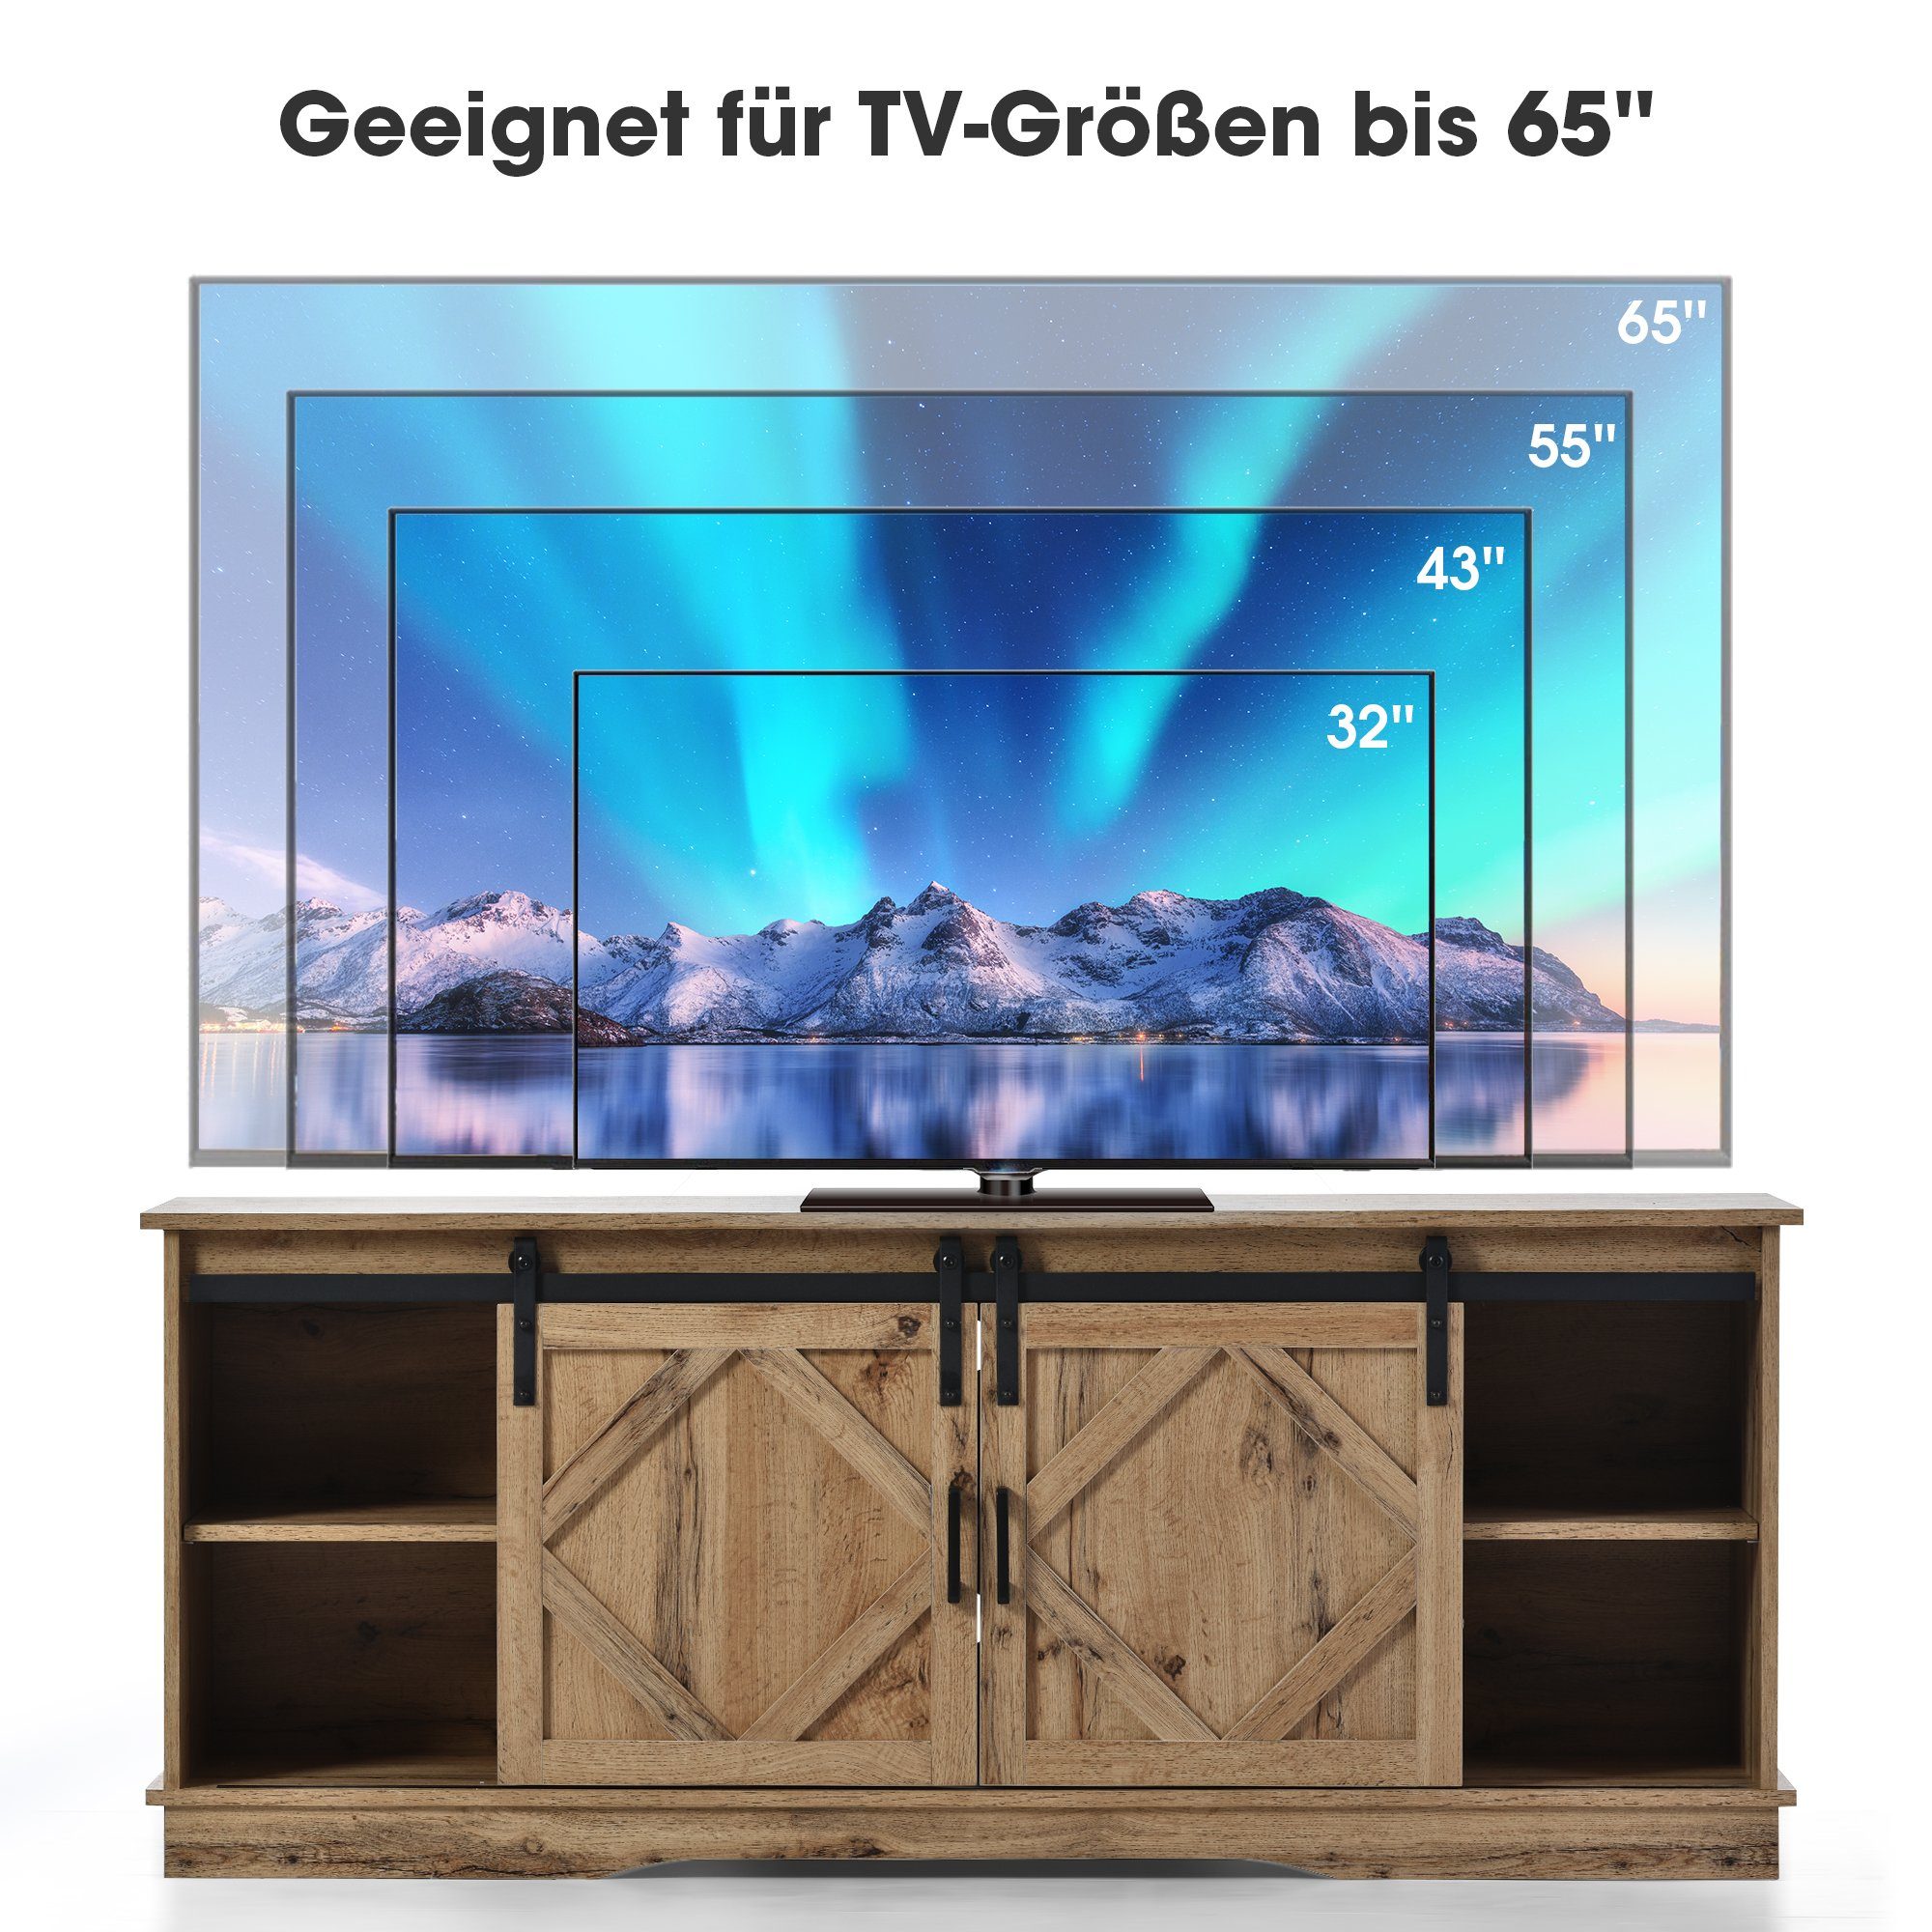 Schiebetüren, mit einstellbare Odikalo Sideboard 2 weiβ/braun Regale TV TV-Schrank Stand